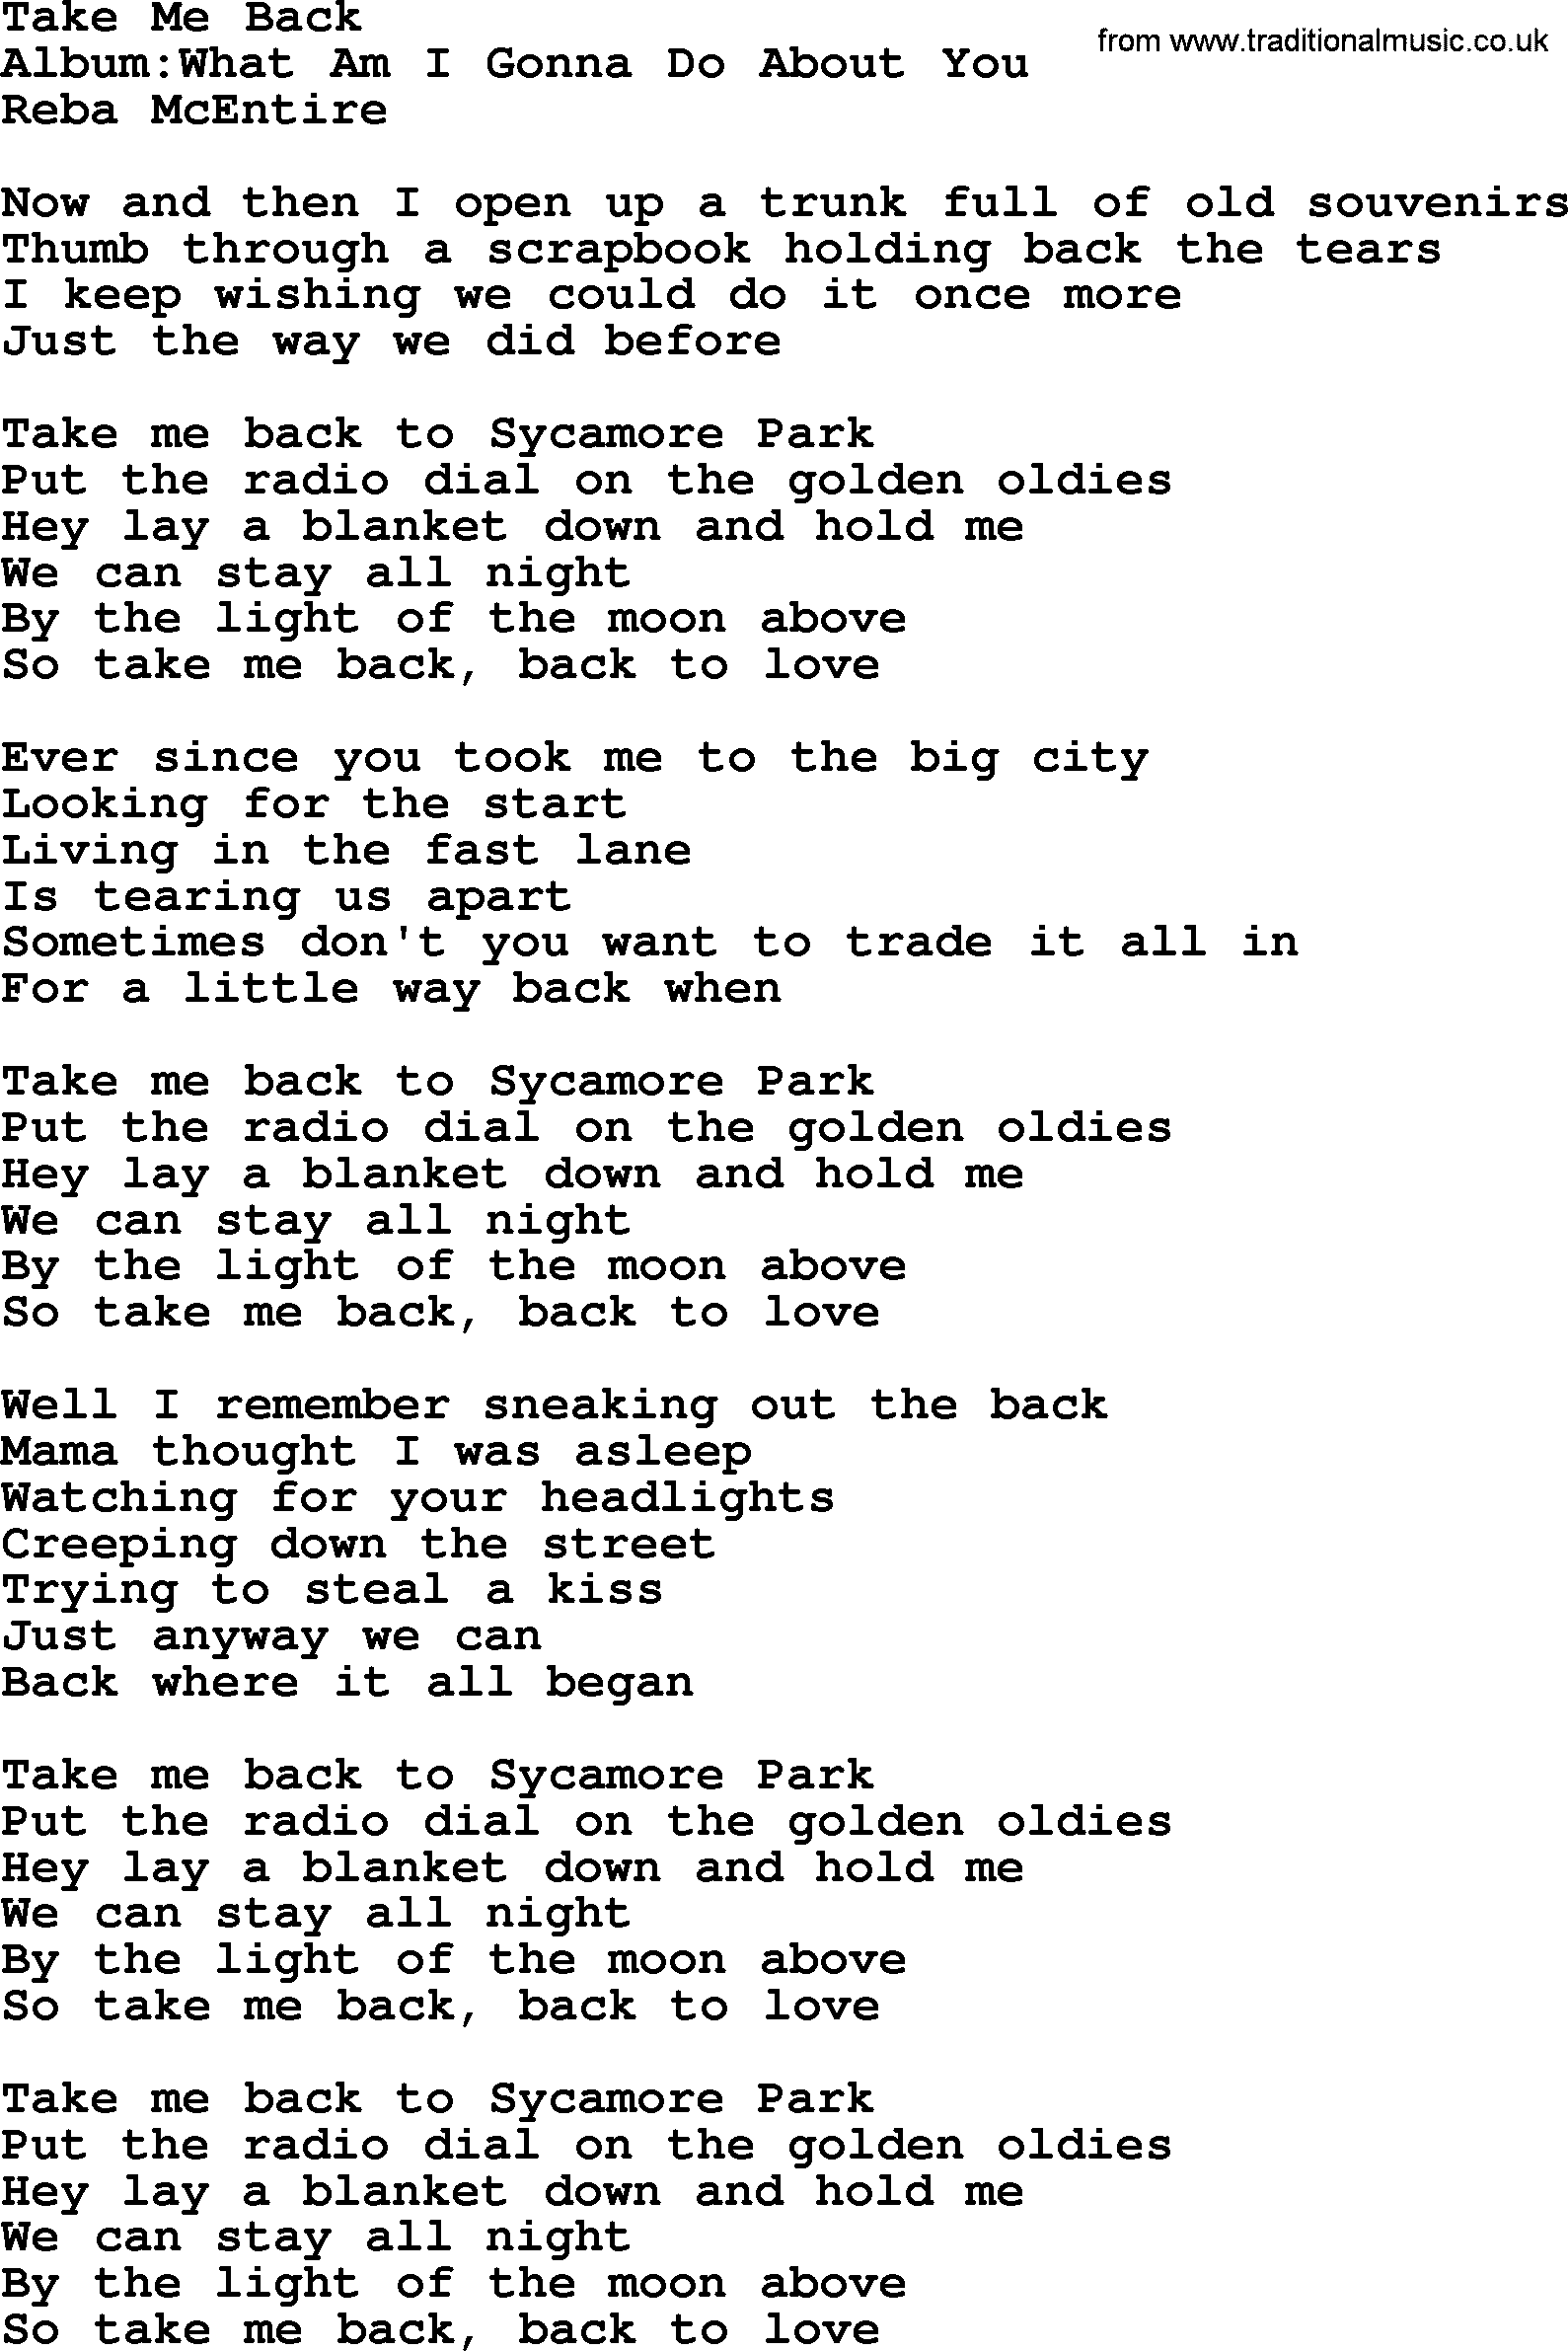 Reba McEntire song: Take Me Back lyrics